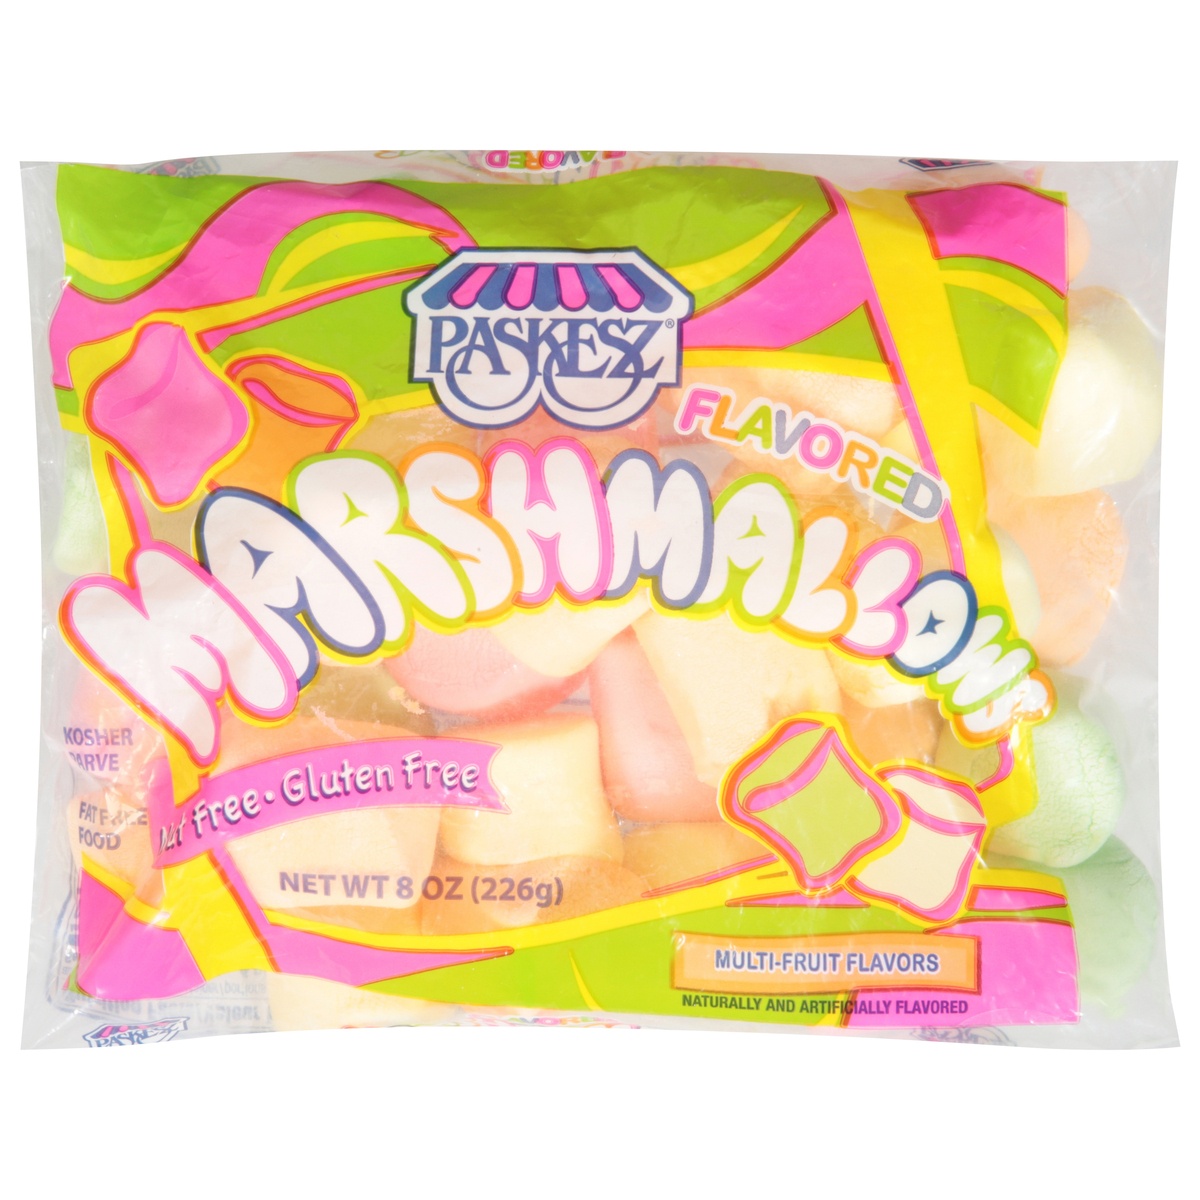 slide 1 of 1, Paskesz Flavored Marshmallows, 8 oz